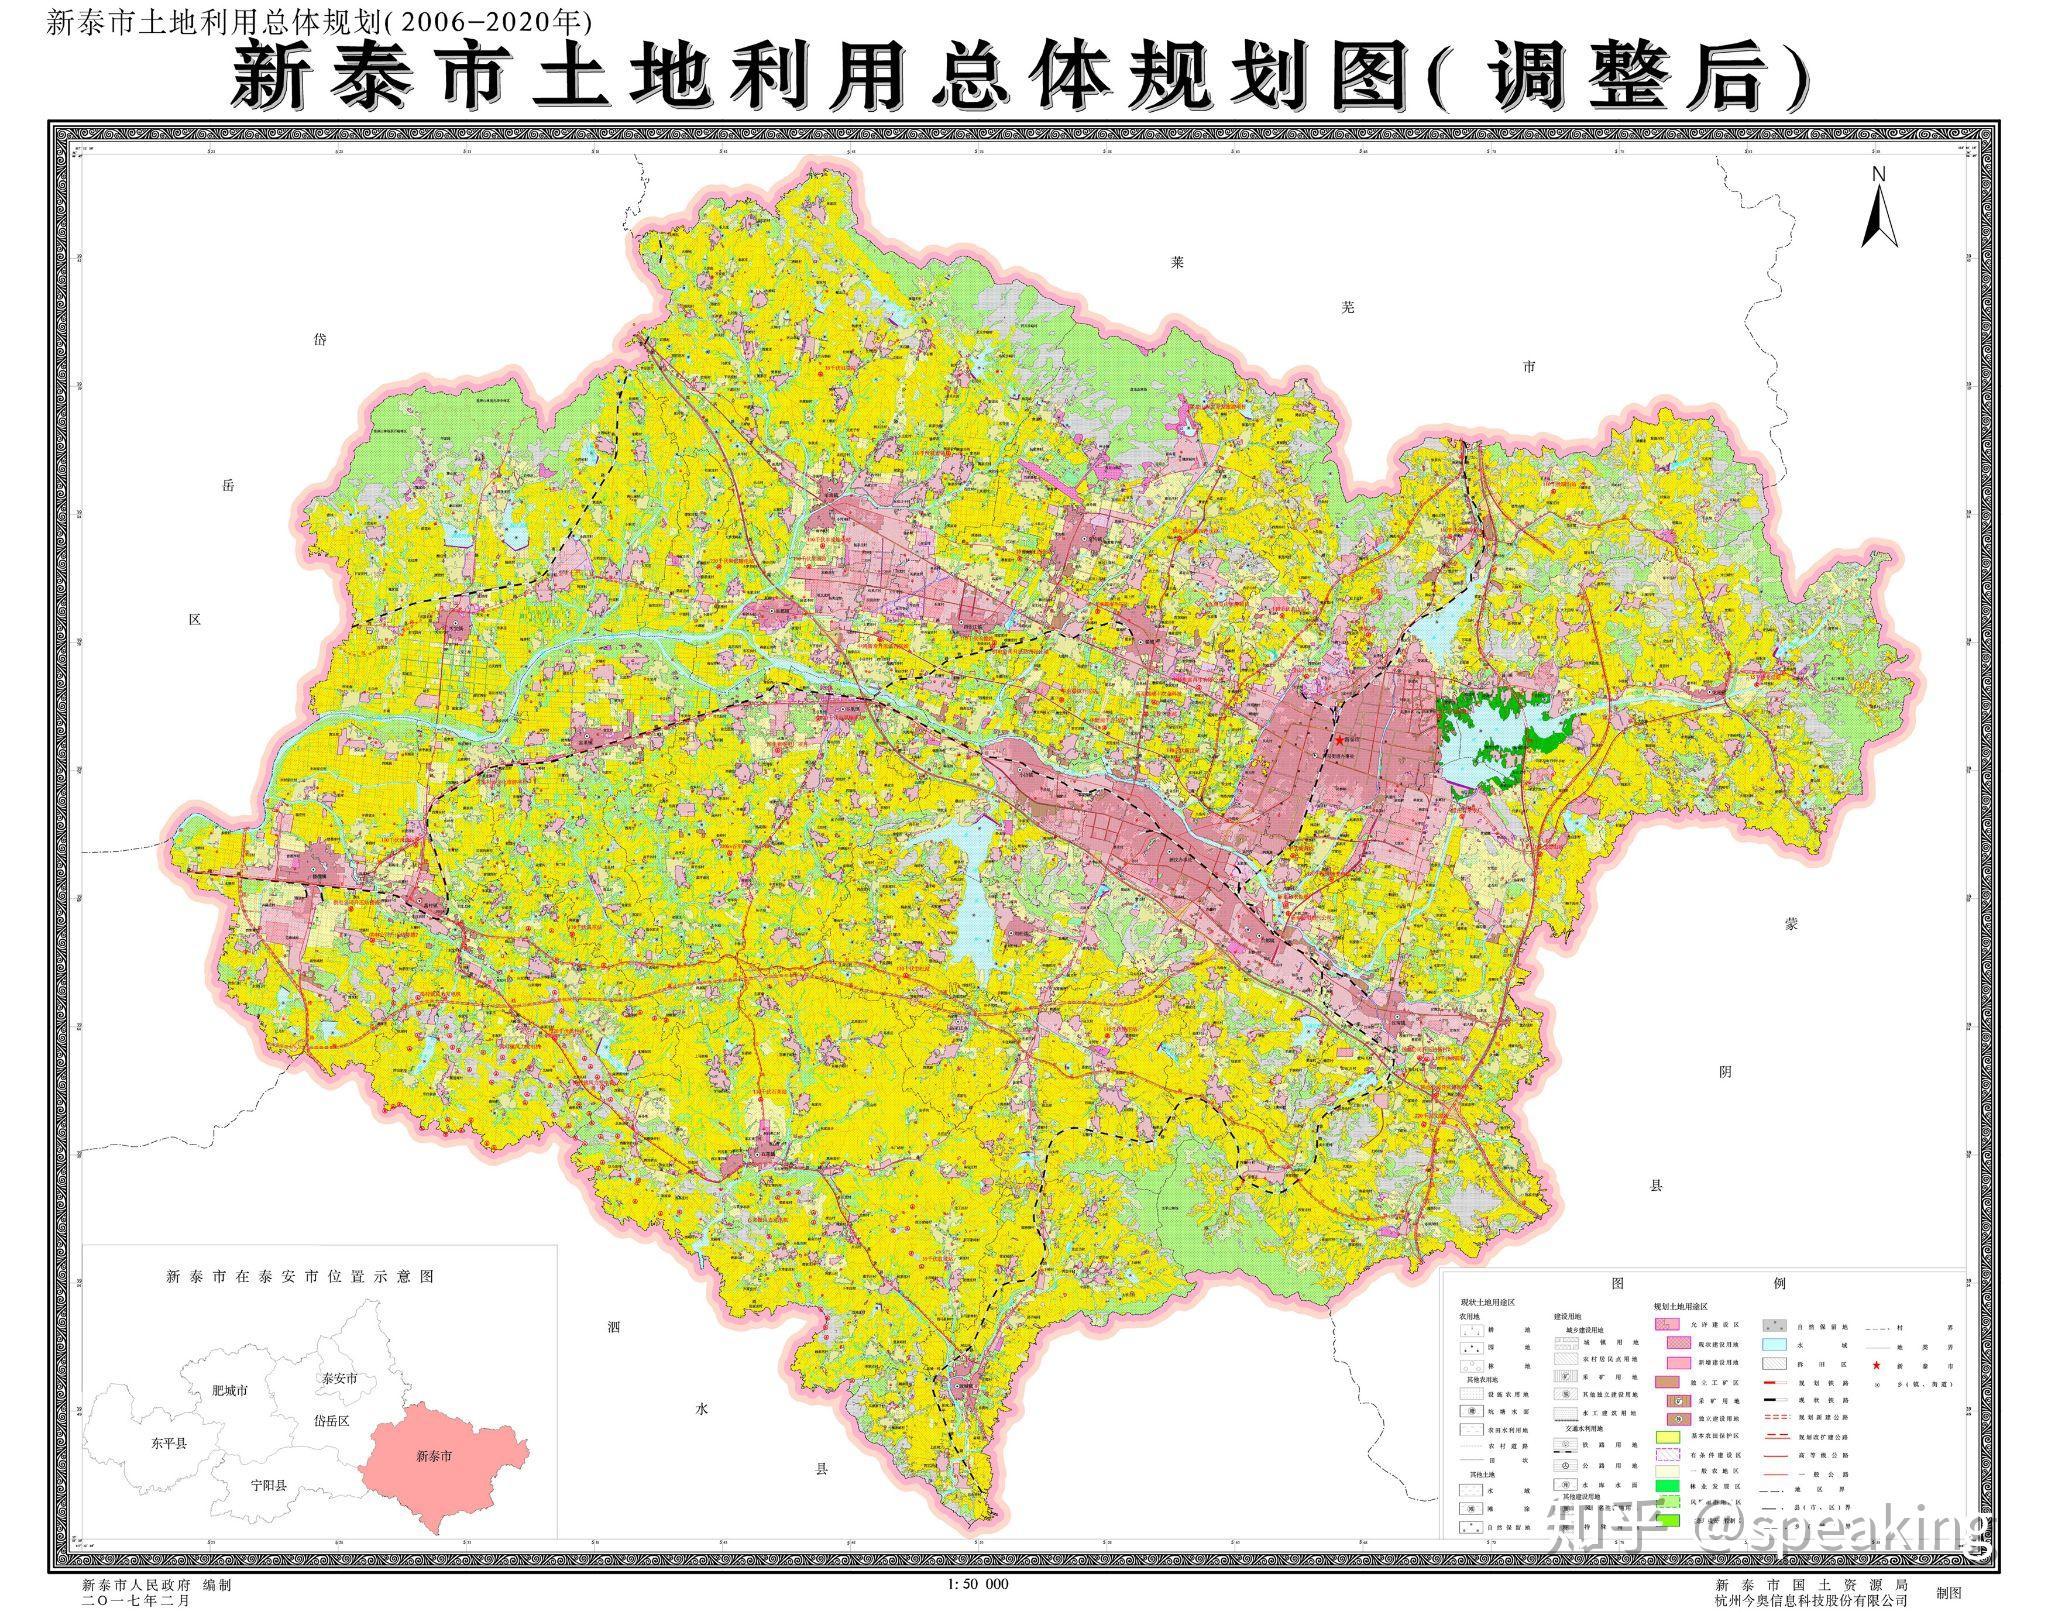 新泰市汶南镇地图图片